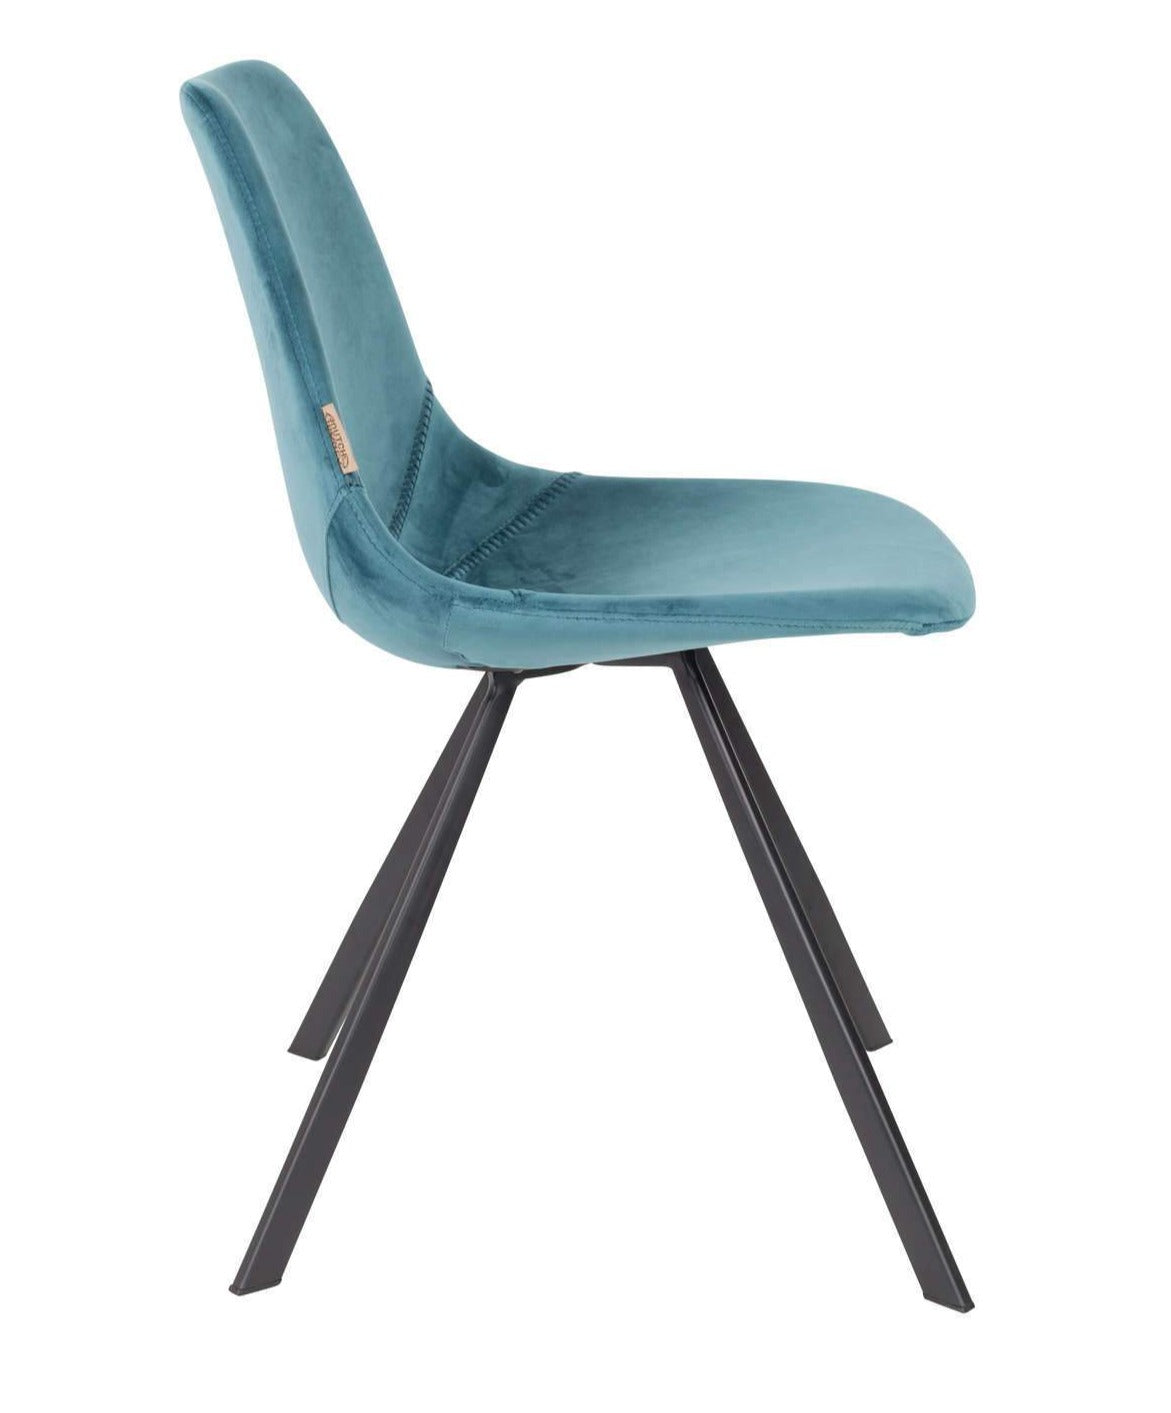 FRANKY VELVET chair blue, Dutchbone, Eye on Design